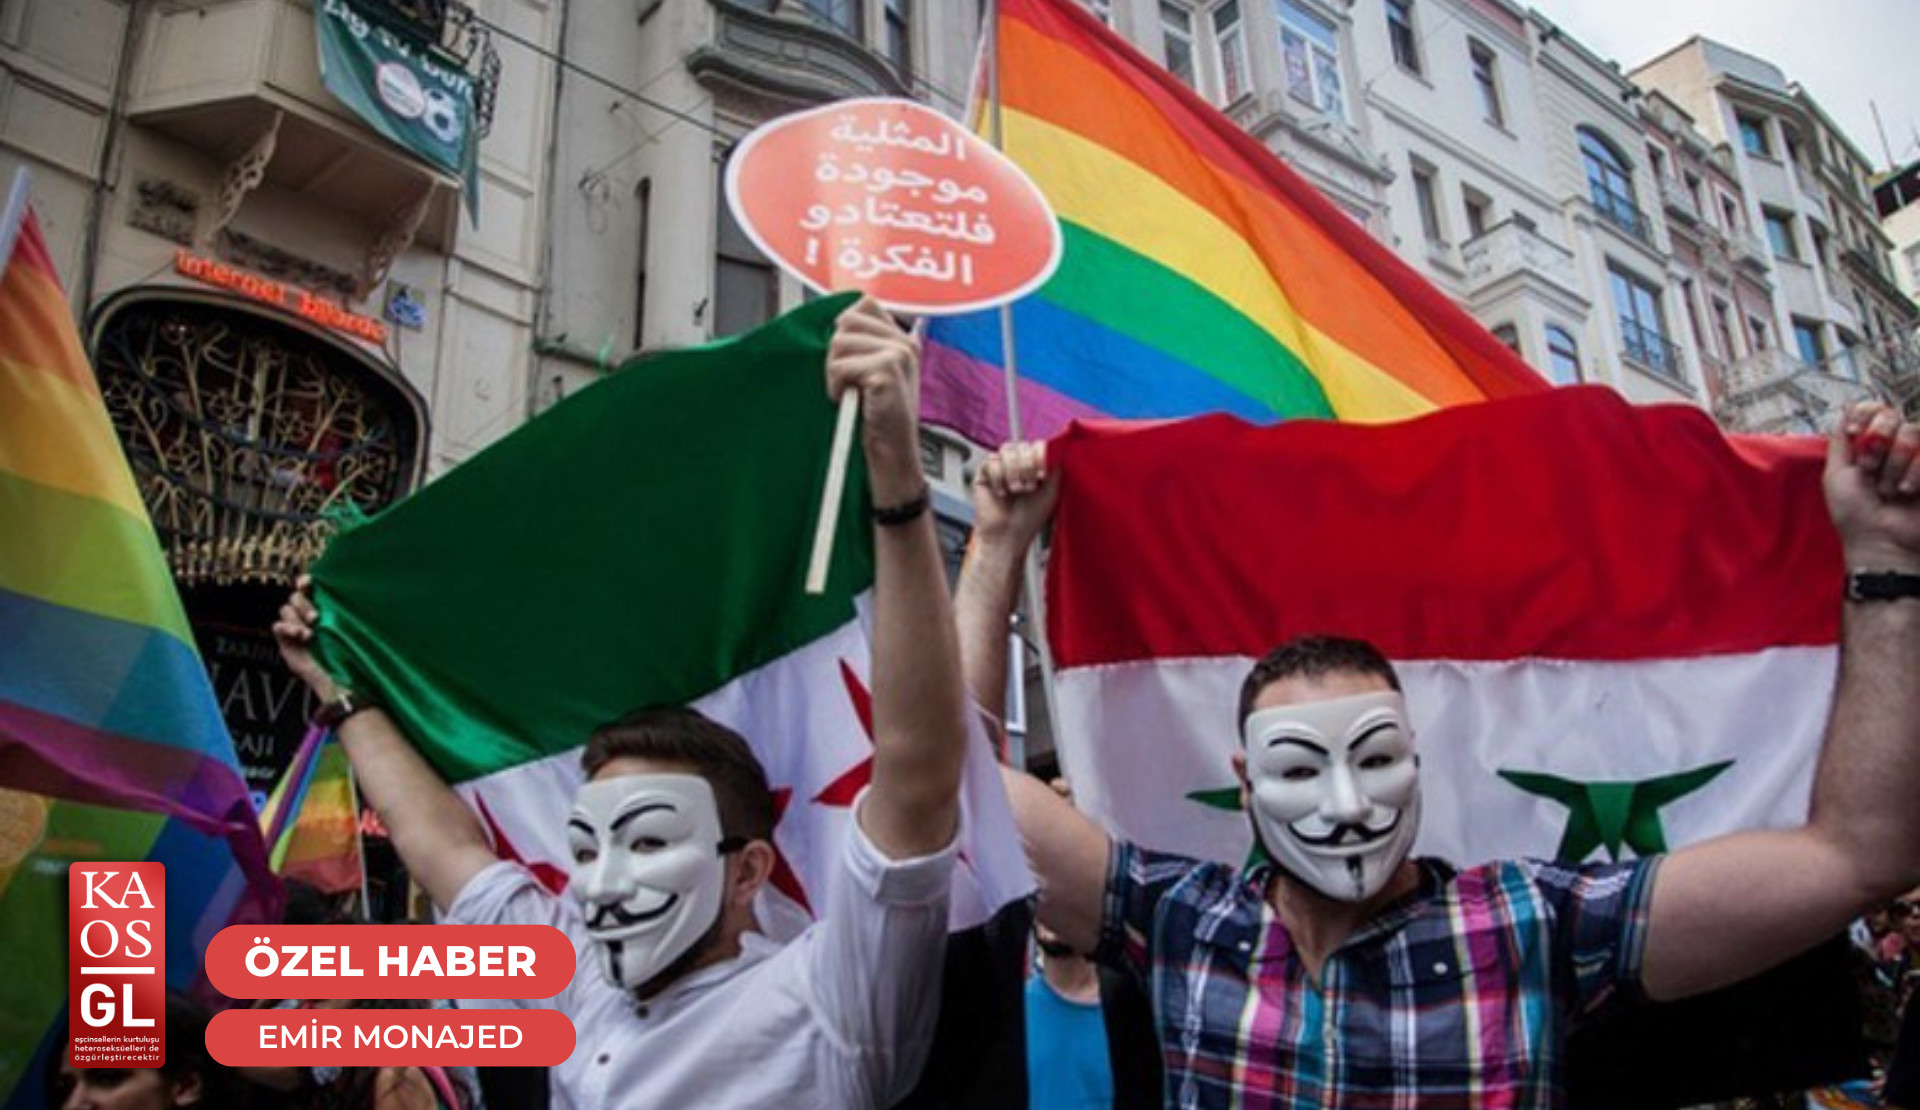 “Seçim süreçlerinde evimden çıkmıyorum” | Kaos GL - LGBTİ+ Haber Portalı Haber